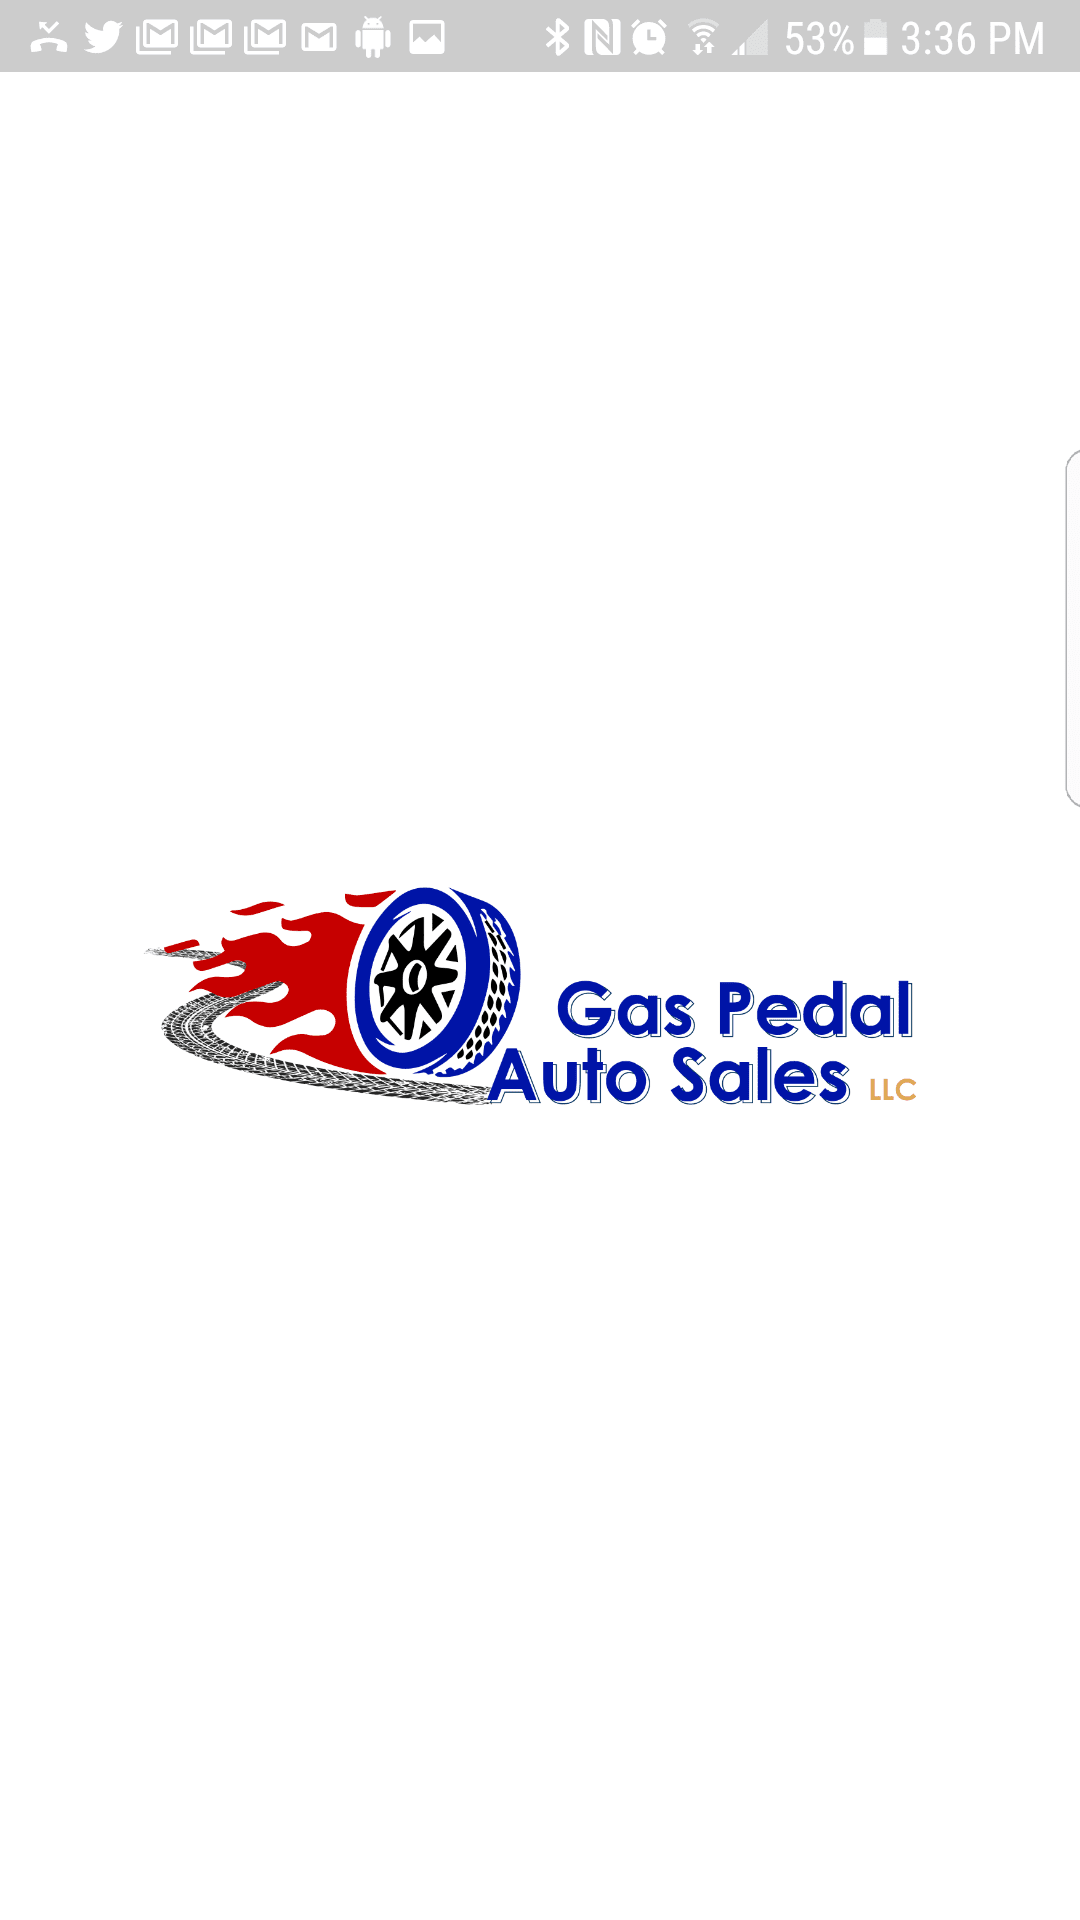 Gas Pedal Auto Sales